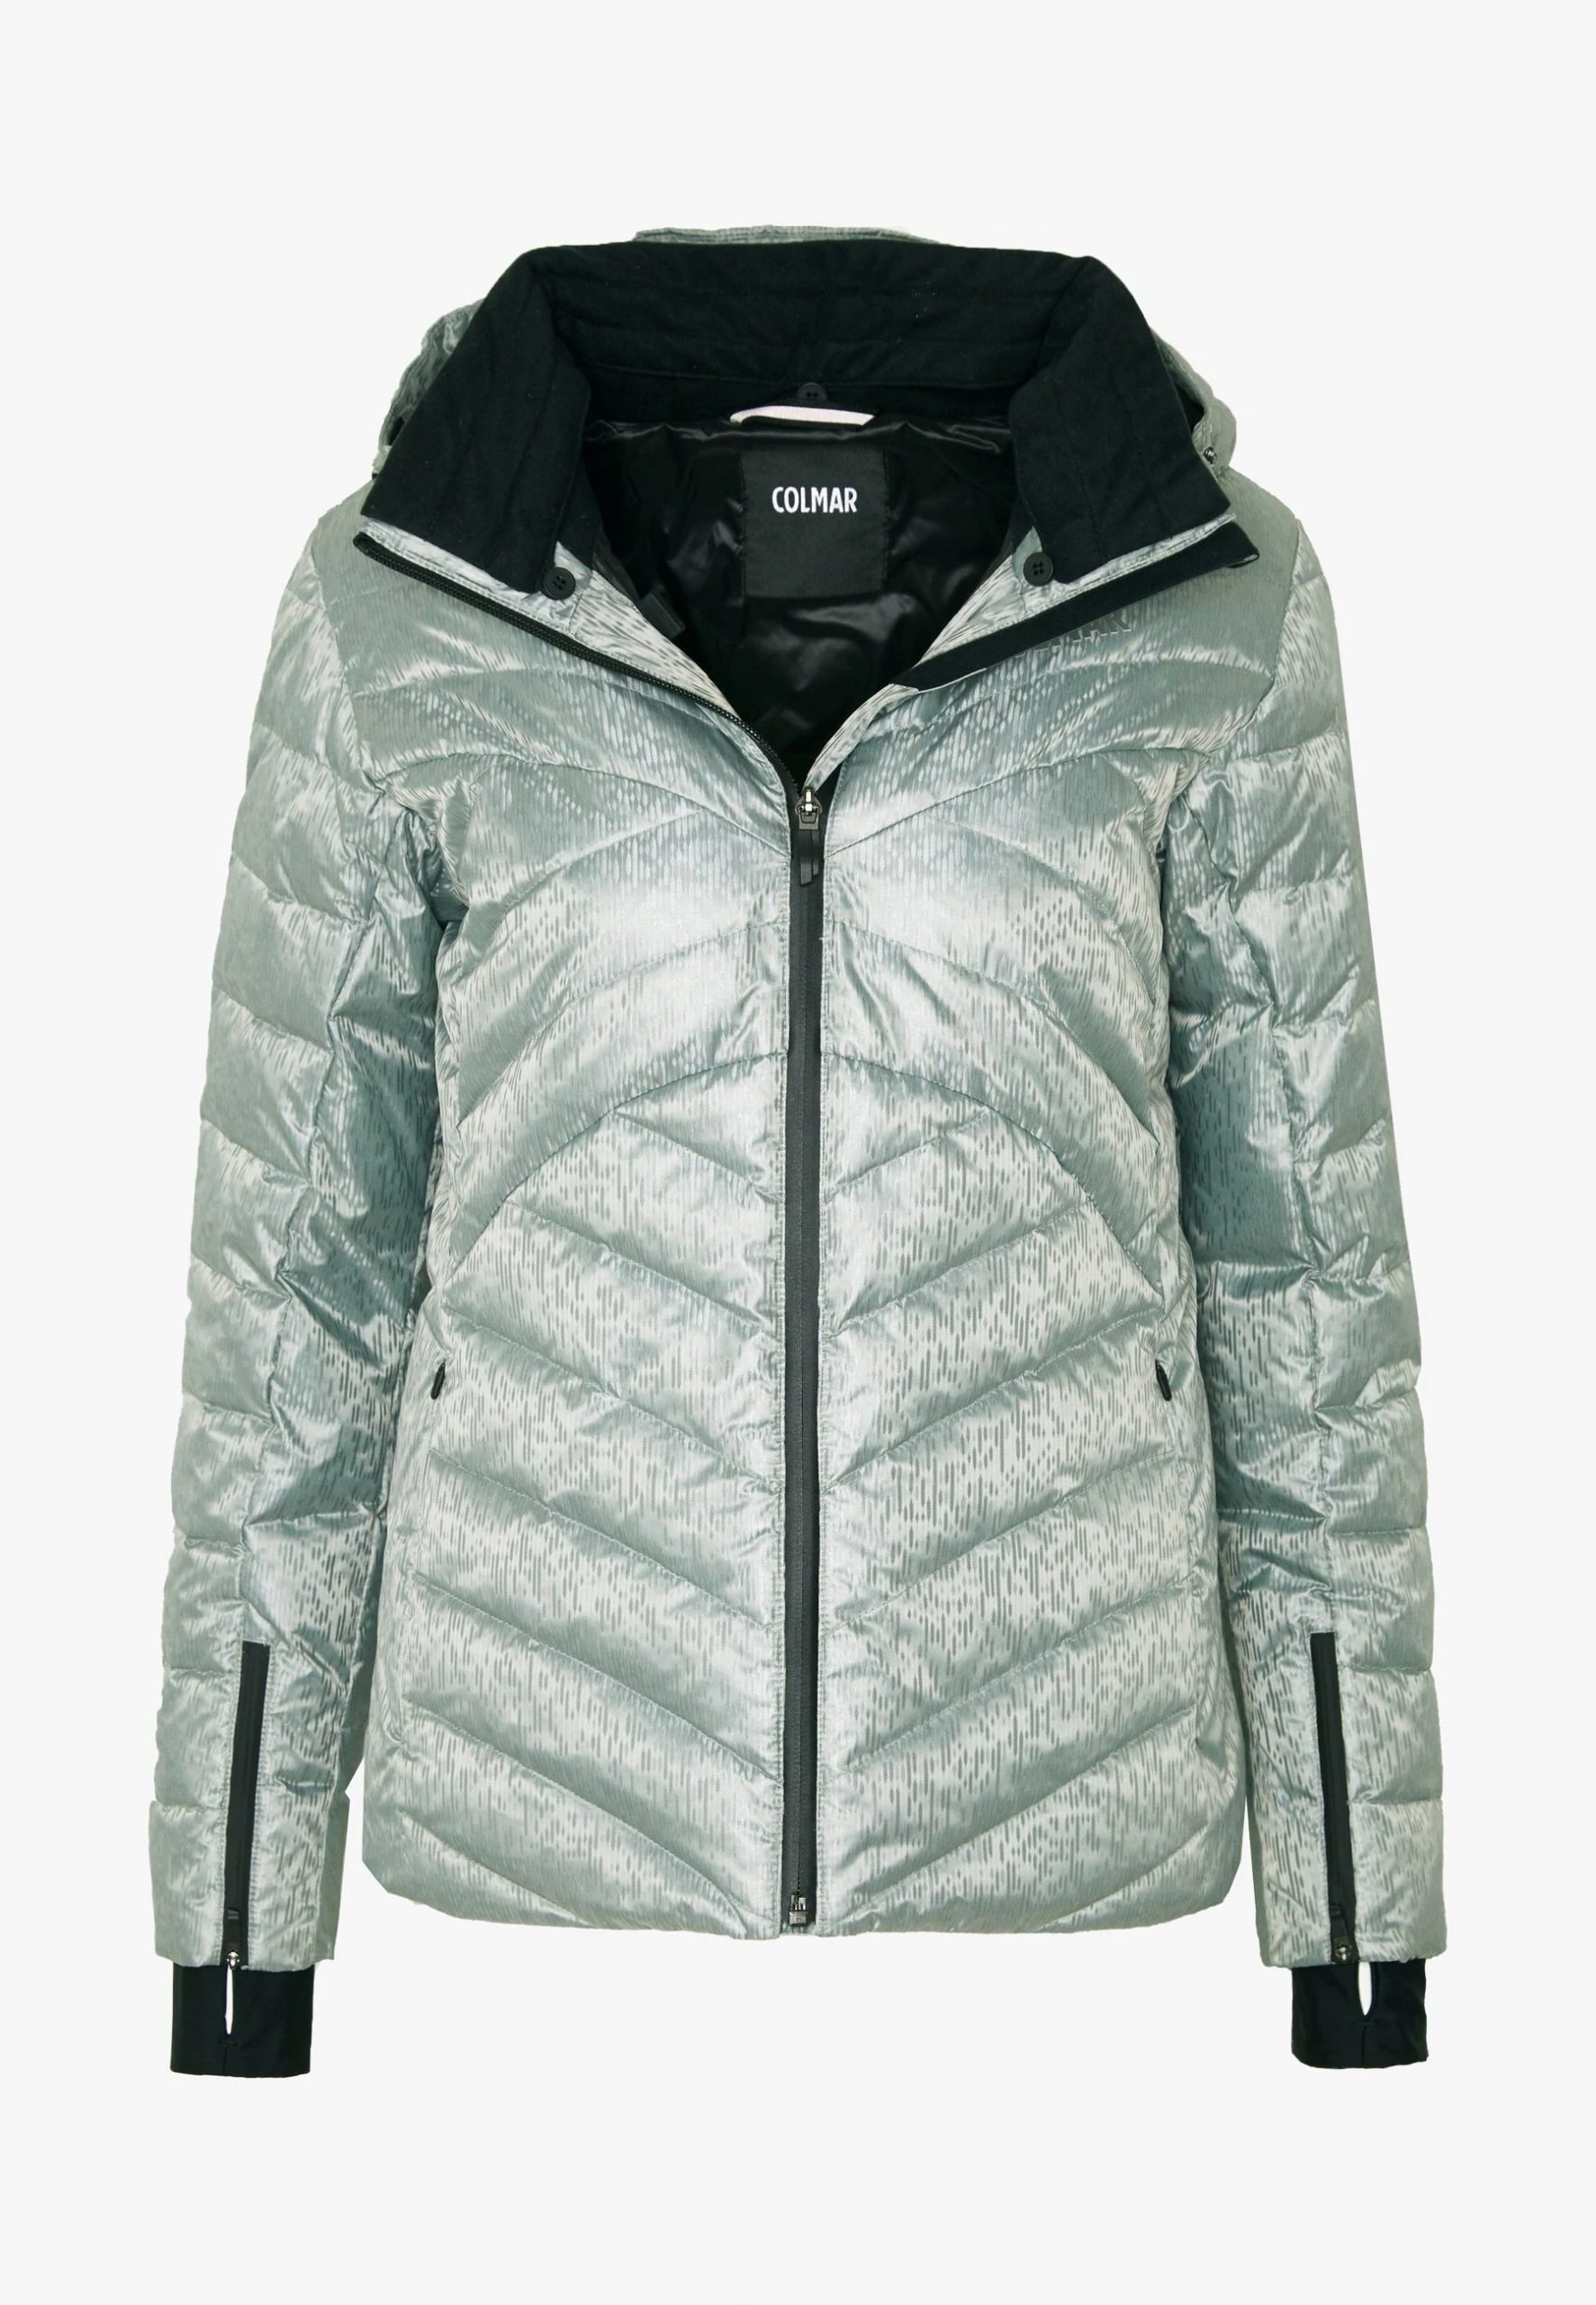 lettergreep mentaal Uitgaan Colmar – ldy Insulated Jacket – wintersport jas – dames | Sportief Tilburg